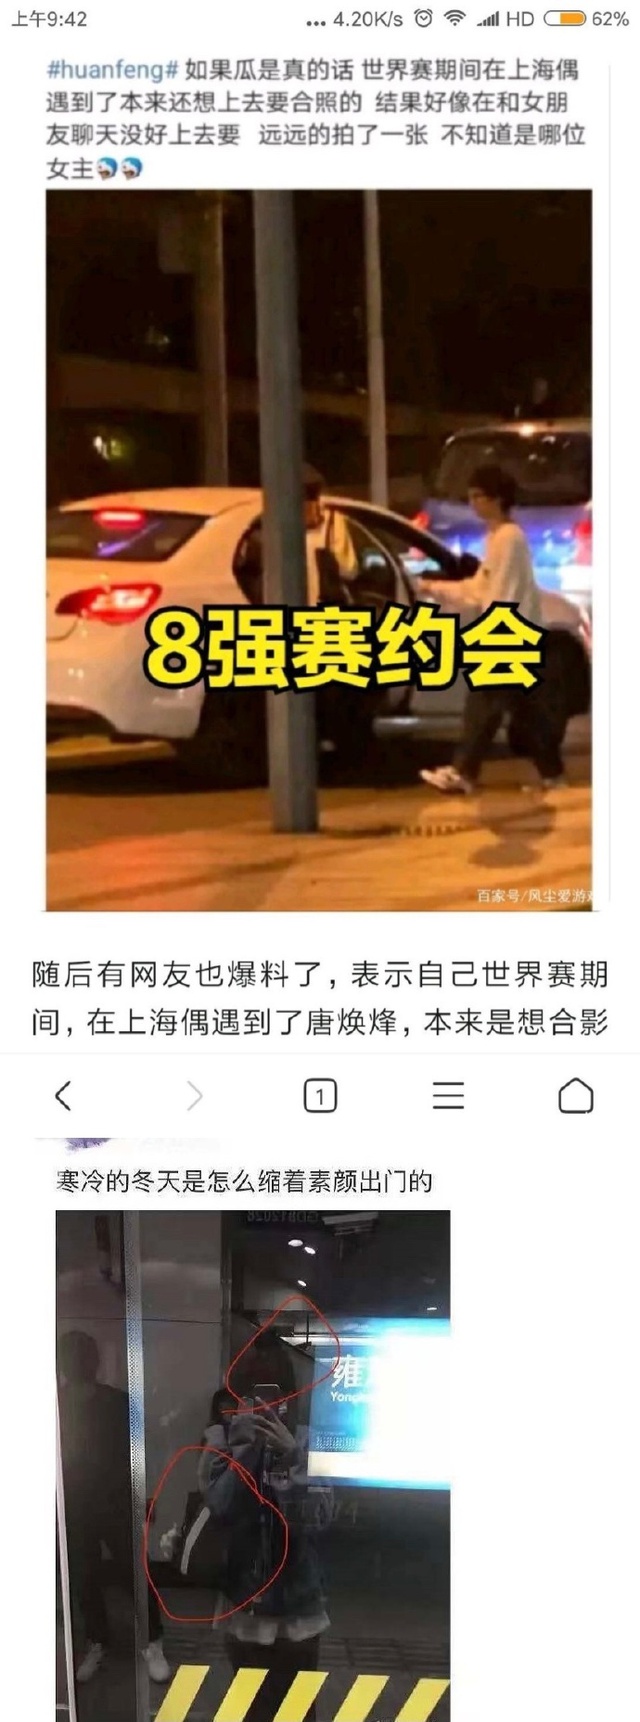 Sốc: Huanfeng bị tố cắm sừng bạn gái, đang đánh CKTG vẫn lén ra ngoài mây mưa với fan nữ - Ảnh 2.